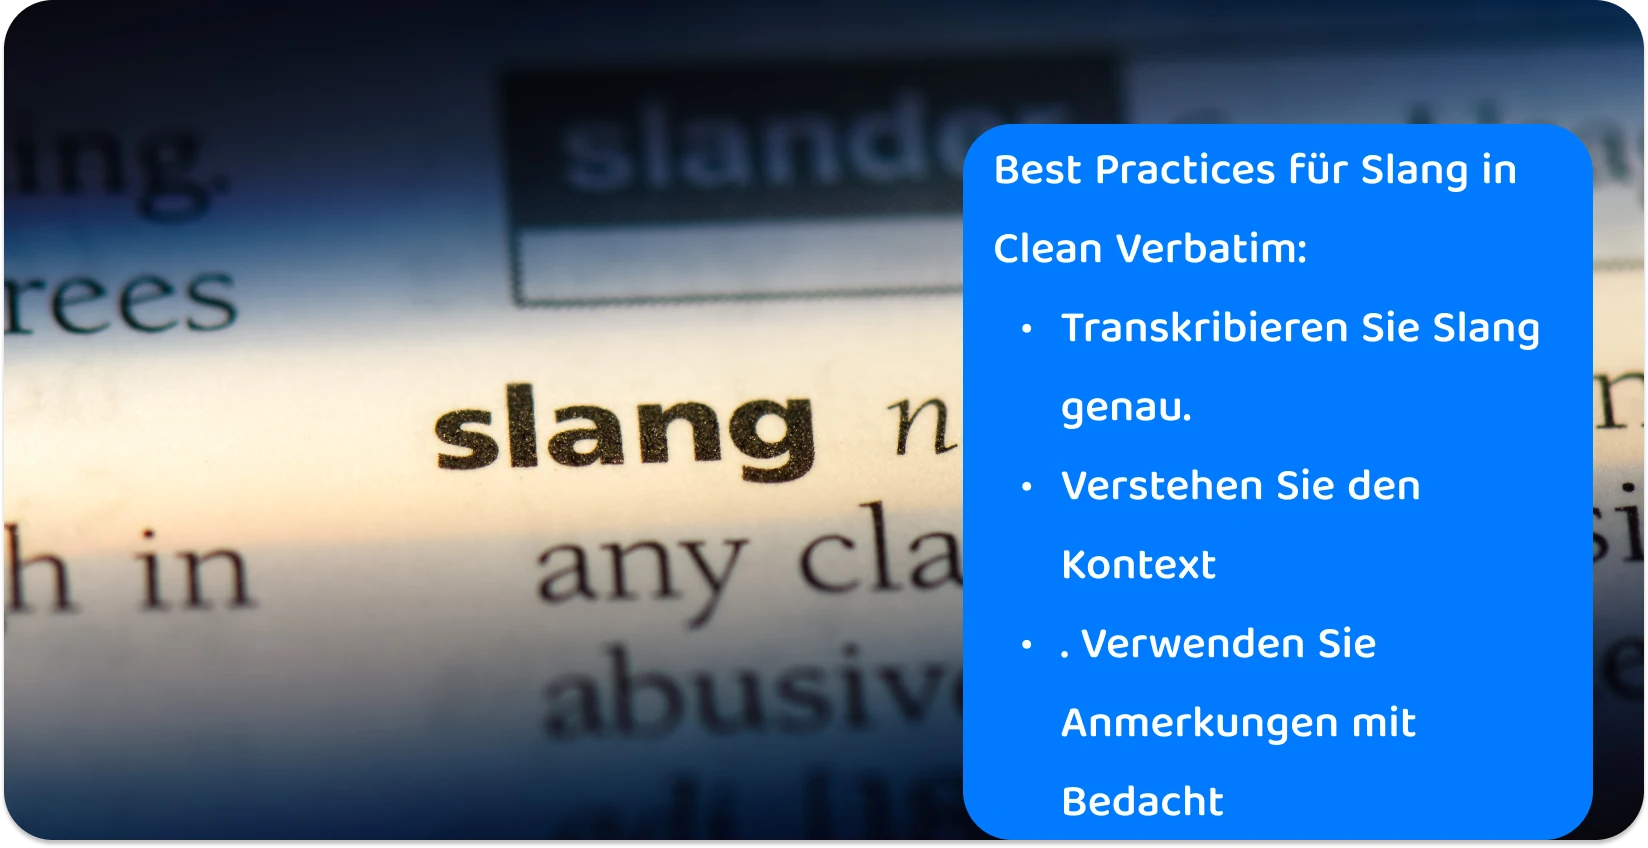 Nahaufnahme des Wortes "Slang" in einem Wörterbuch, die die Präzision hervorhebt, die bei Transkriptionspraktiken für die moderne Umgangssprache erforderlich ist.